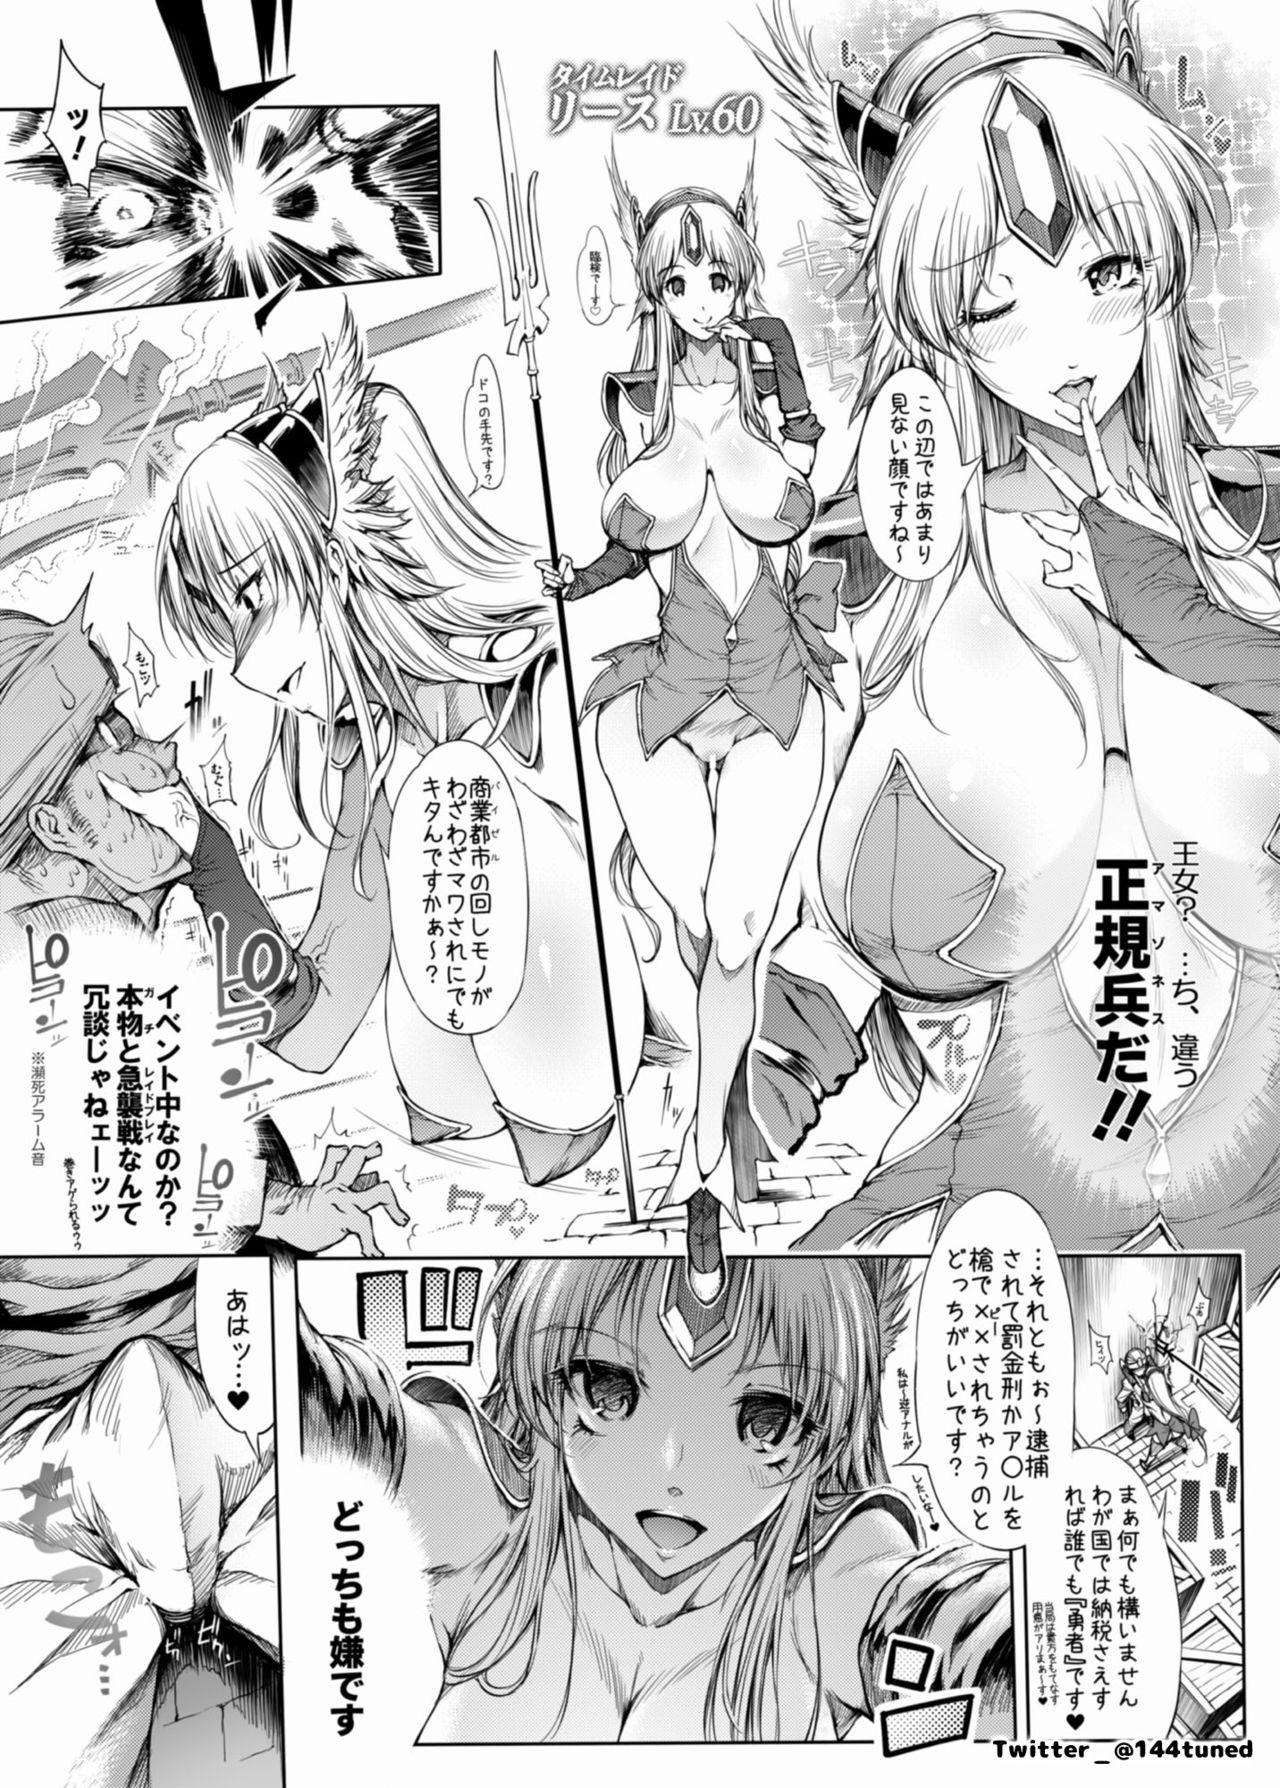 Rough Sex RIESZ&FASHION7 - Seiken densetsu 3 Foursome - Page 4